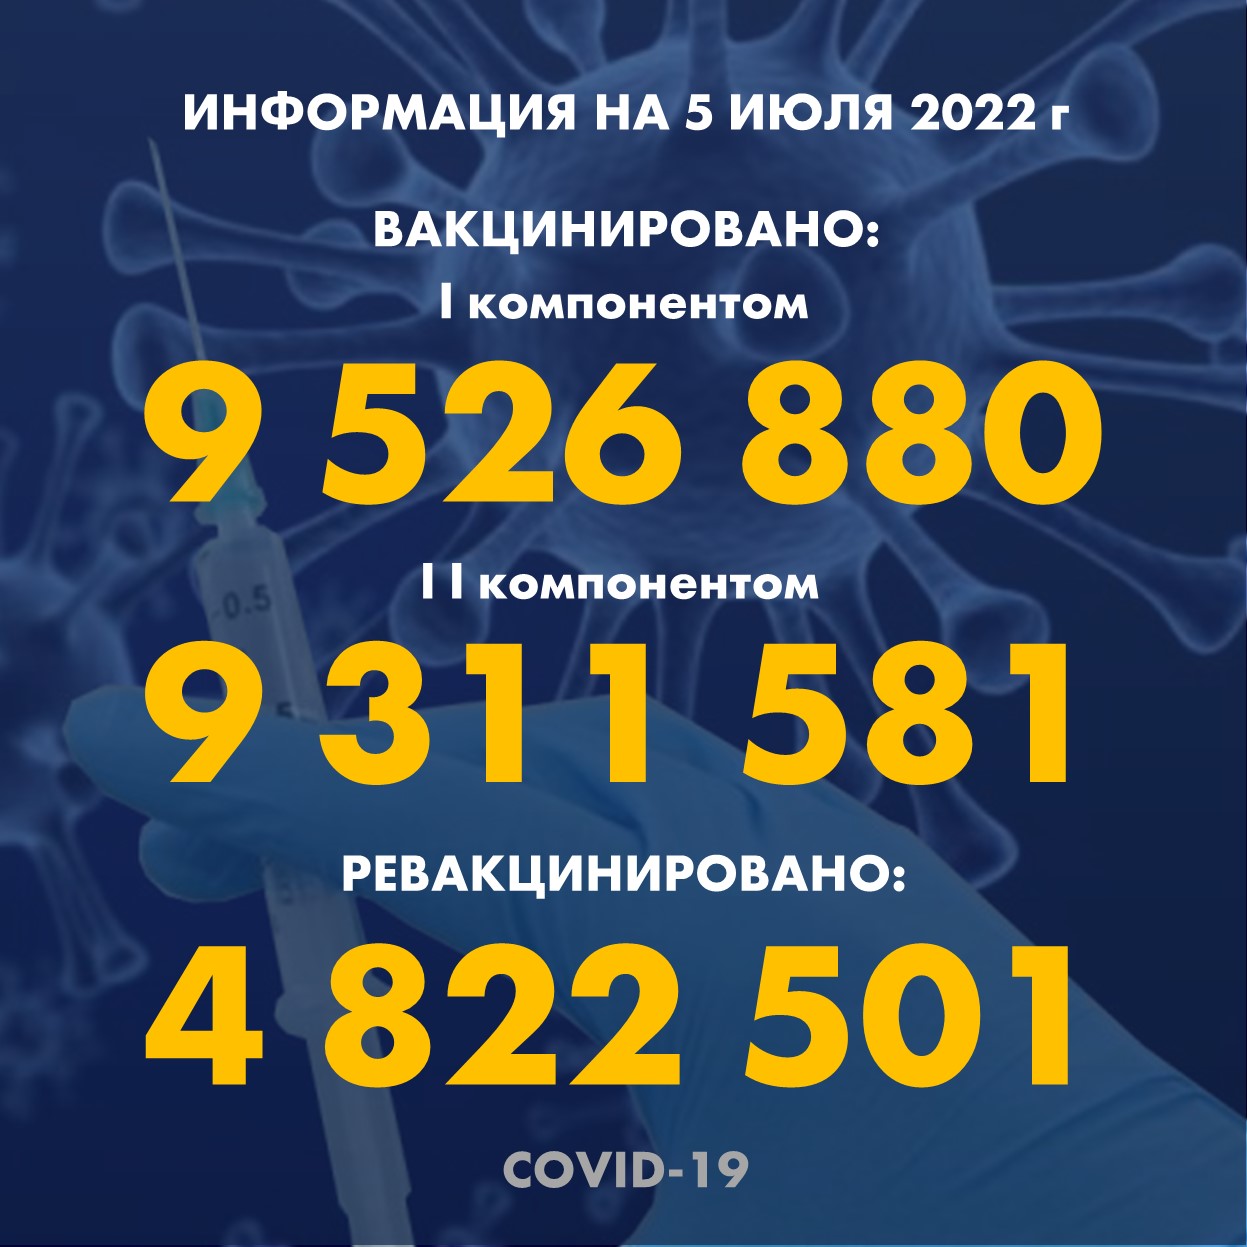 I компонентом 9 526 880 человек провакцинировано в Казахстане на 5.07.2022 г, II компонентом 9 311 581 человек. Ревакцинировано – 4 822 501